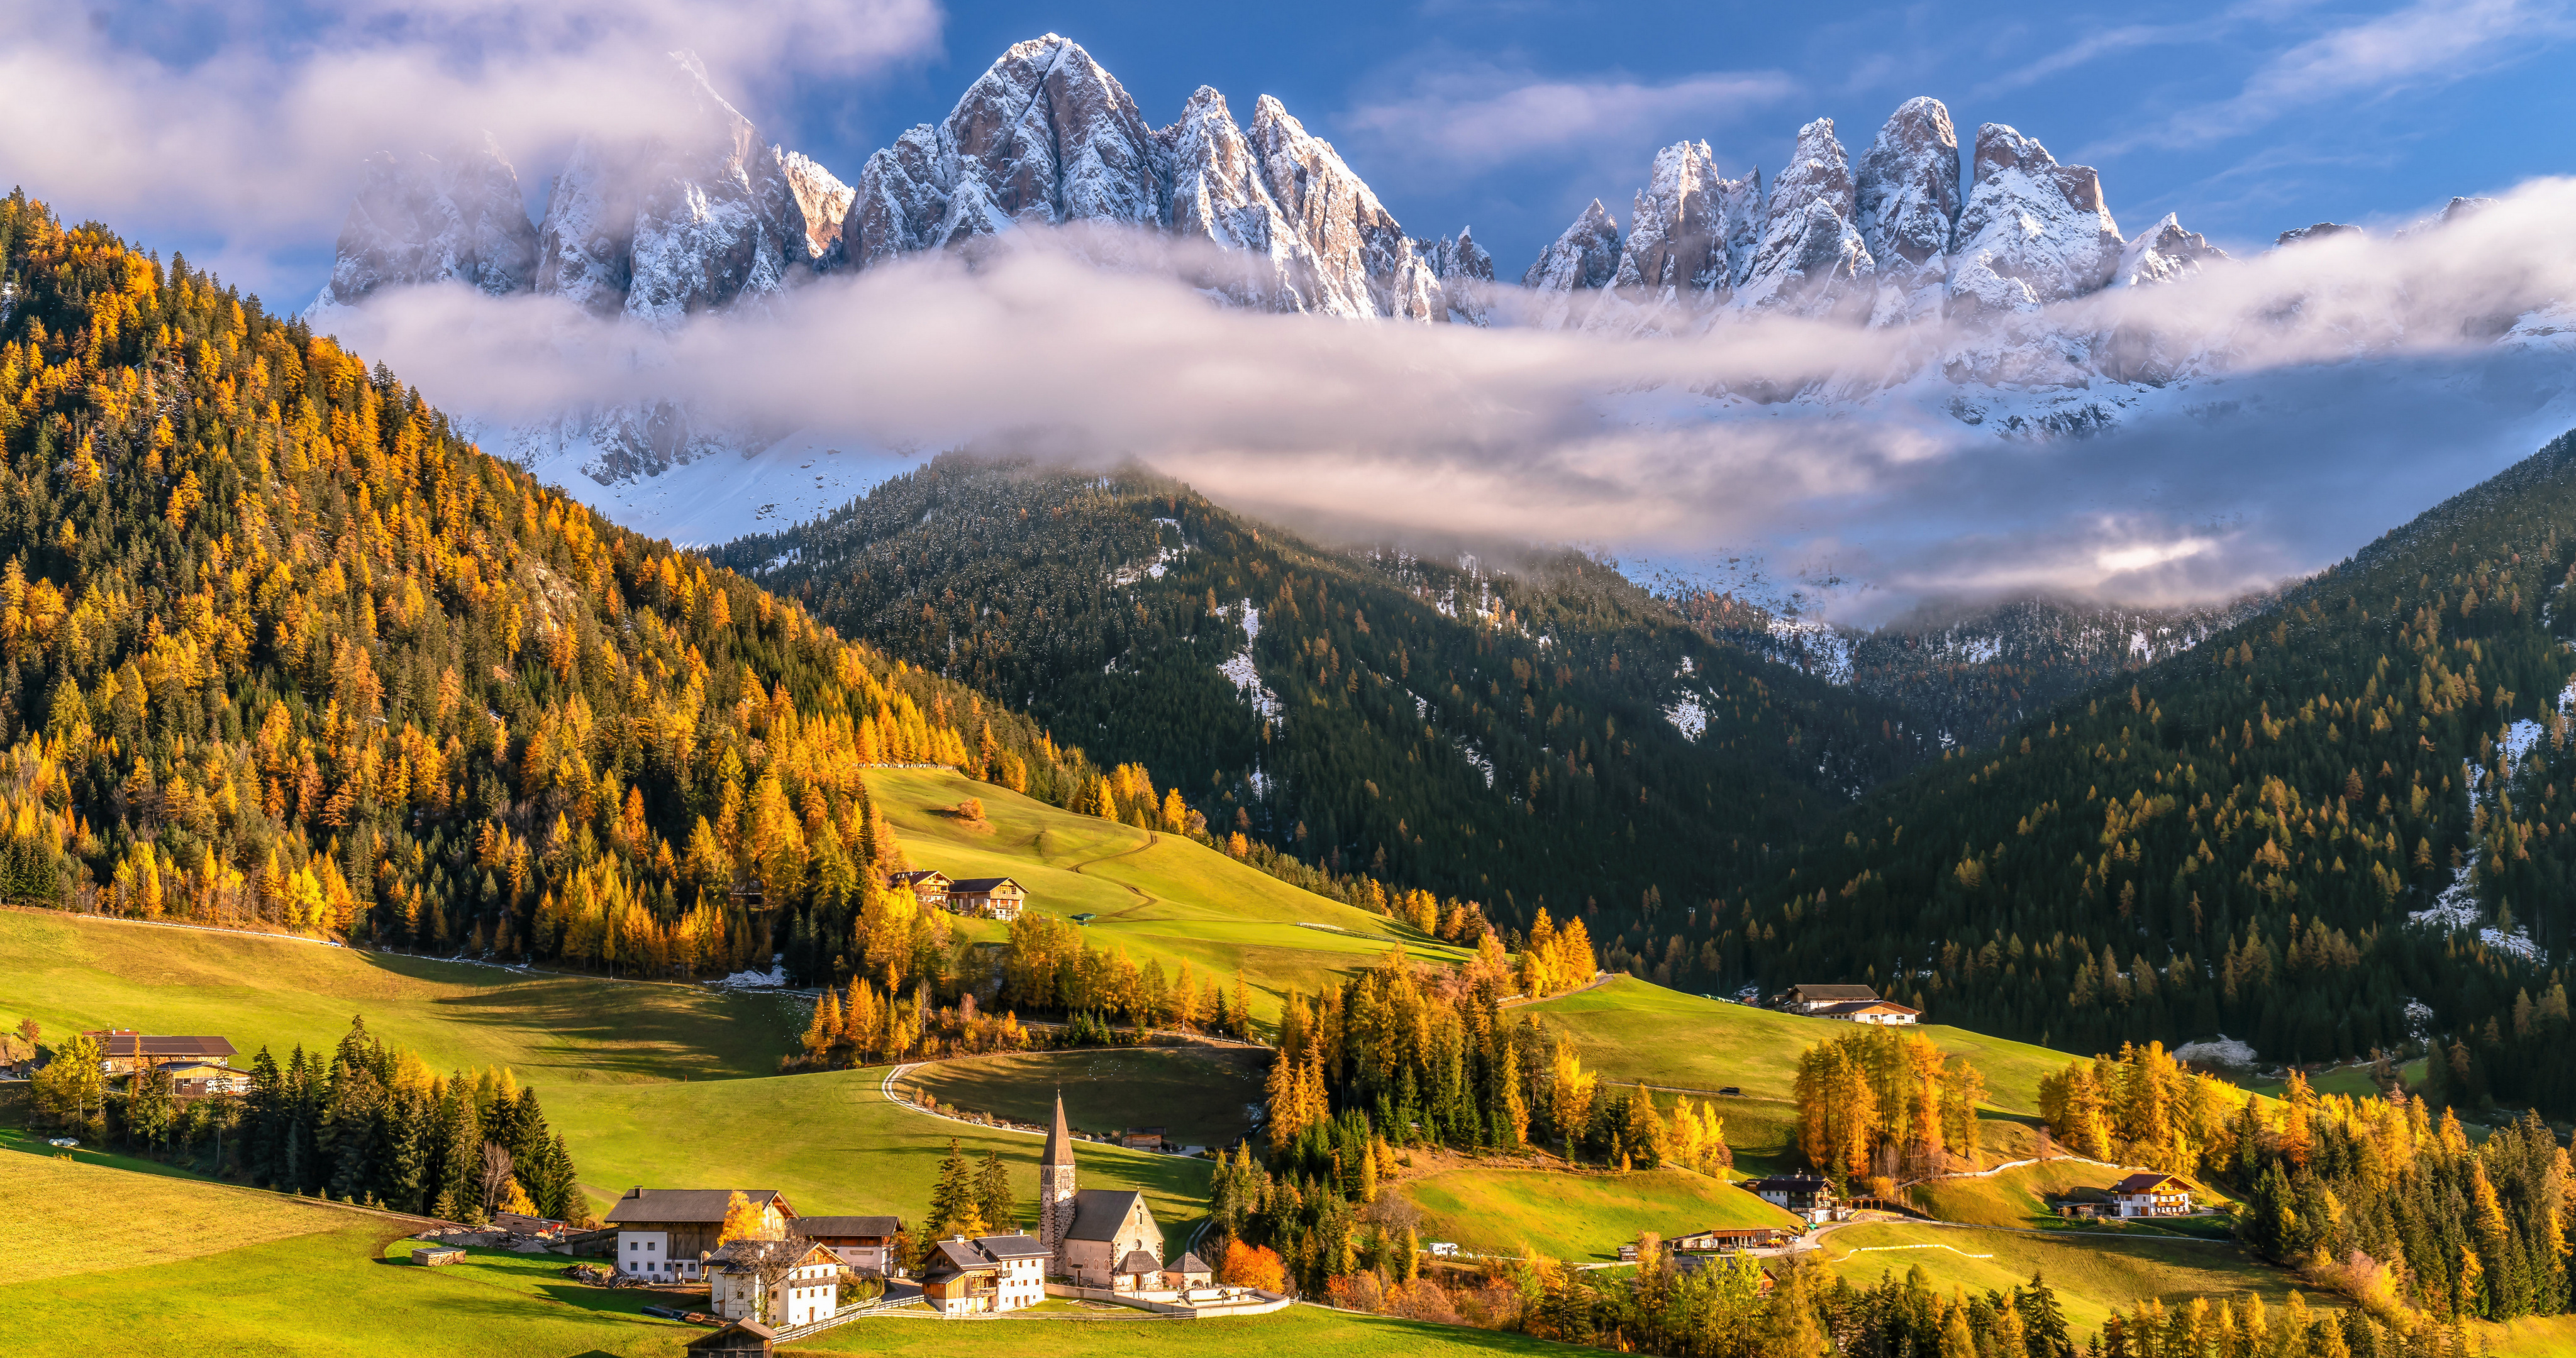 Обои на рабочий стол Альпы, Италия, облачно, Облака, Осень, Пейзаж, альп, Горы, облако, Dolomites, Природа, осенние, Долина, гора